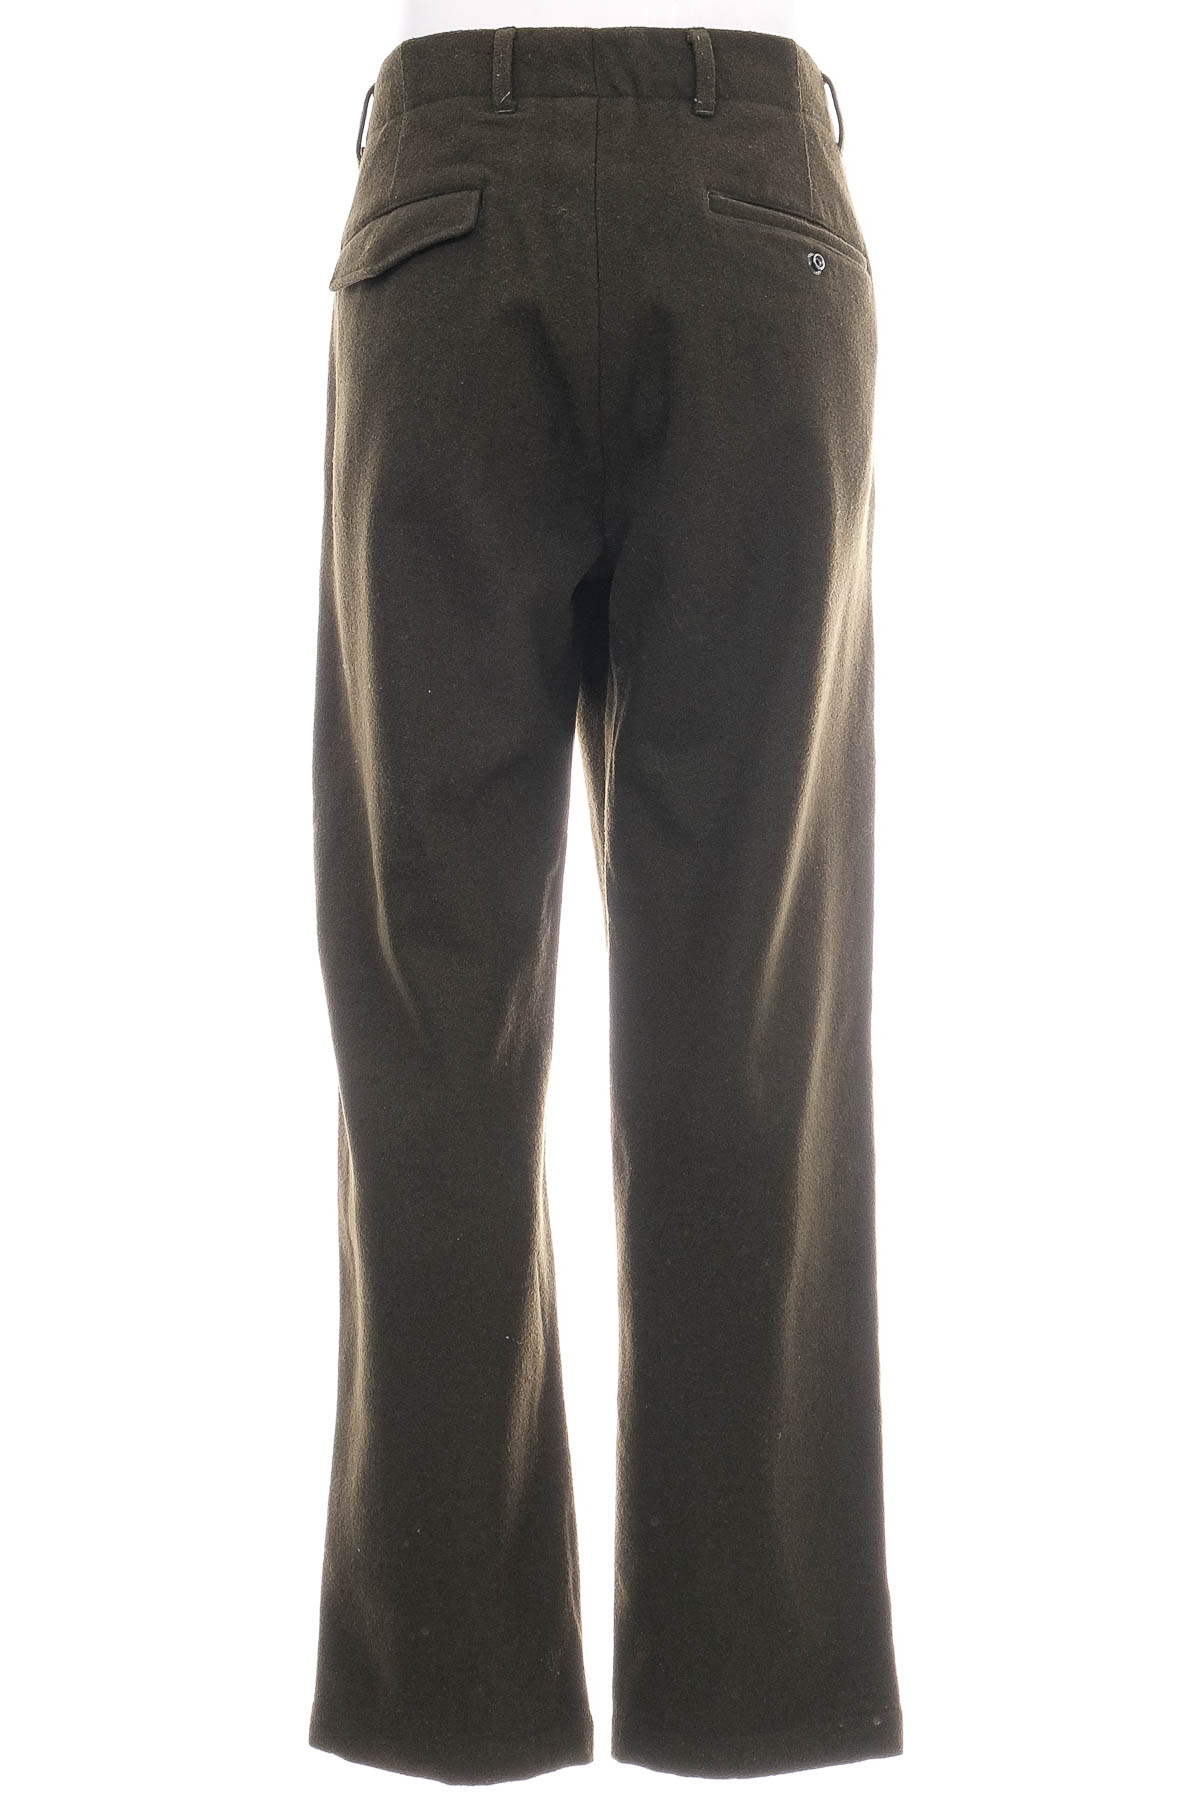 Pantalon pentru bărbați - SCOTCH & SODA - 1